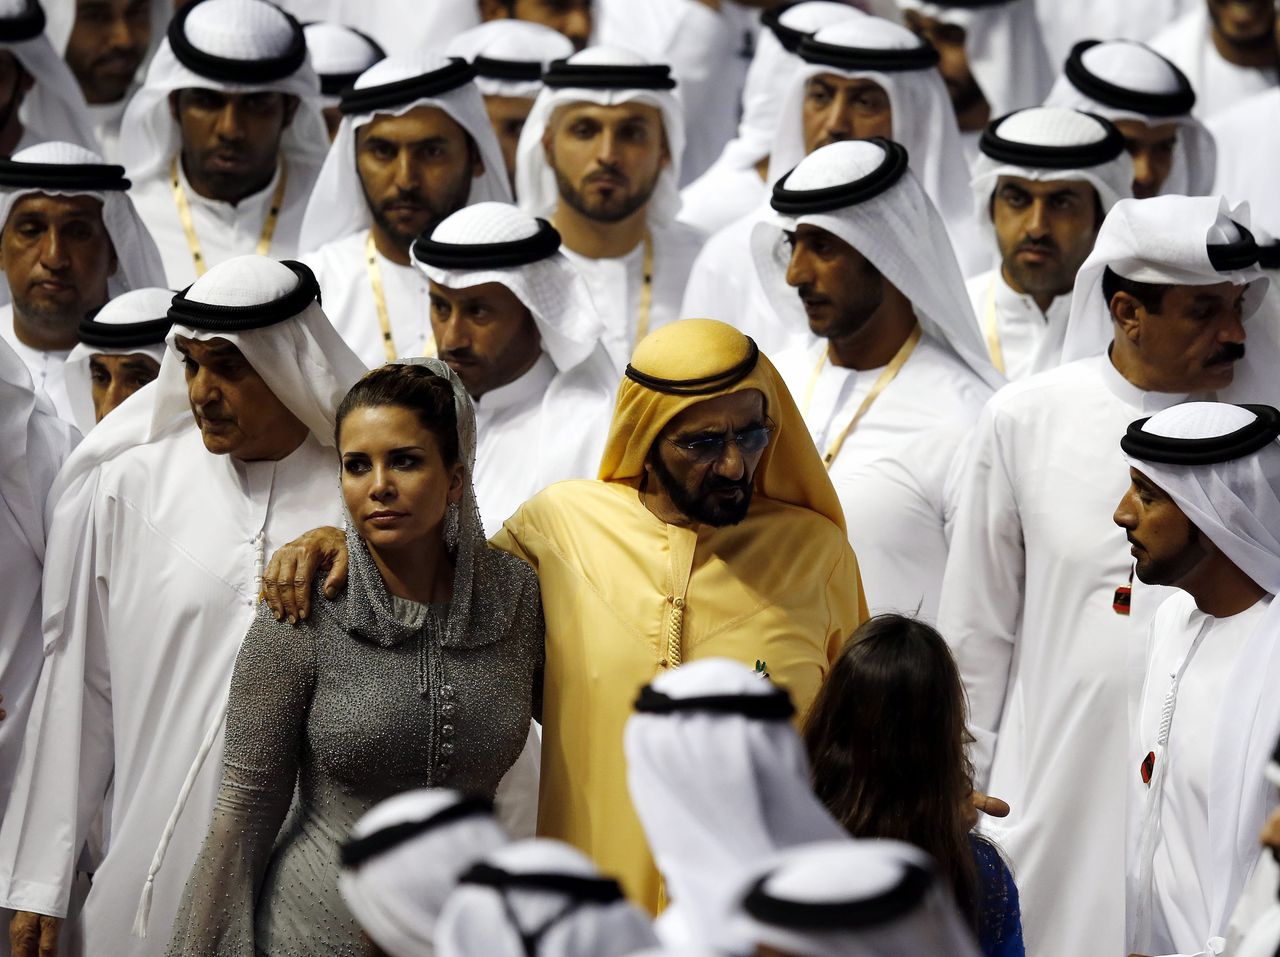 Mohammed bin Rashid Al Maktoum (in het geel) met zijn vrouw prinses Haya bint al-Hussein vertrekken na een wedstrijd in de Dubai World Cup 2016.